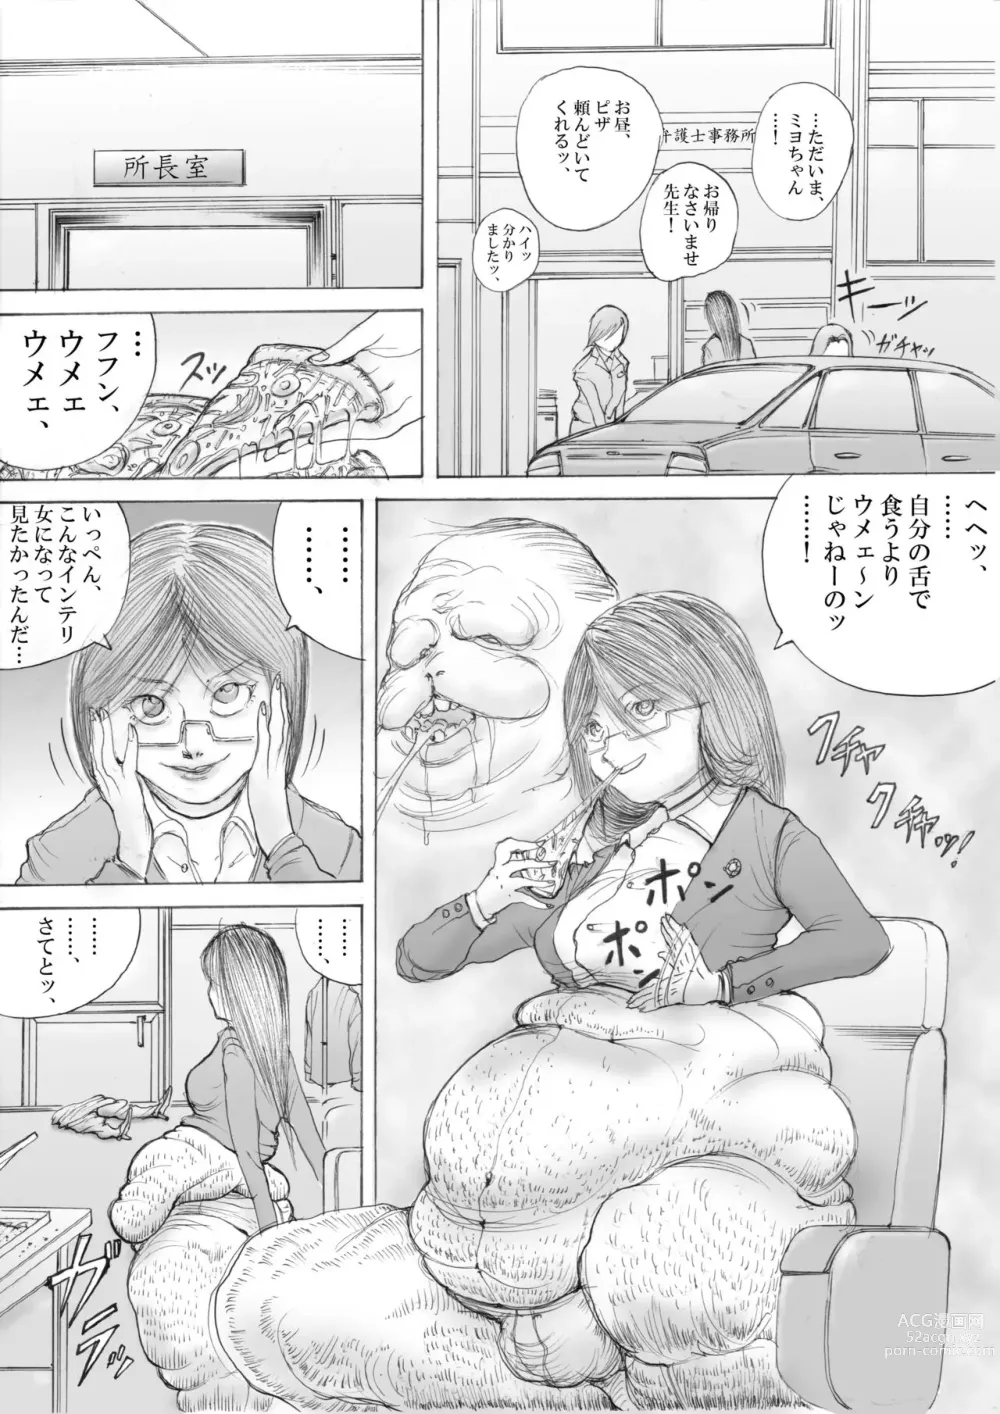 Page 9 of doujinshi Horror Manga 7